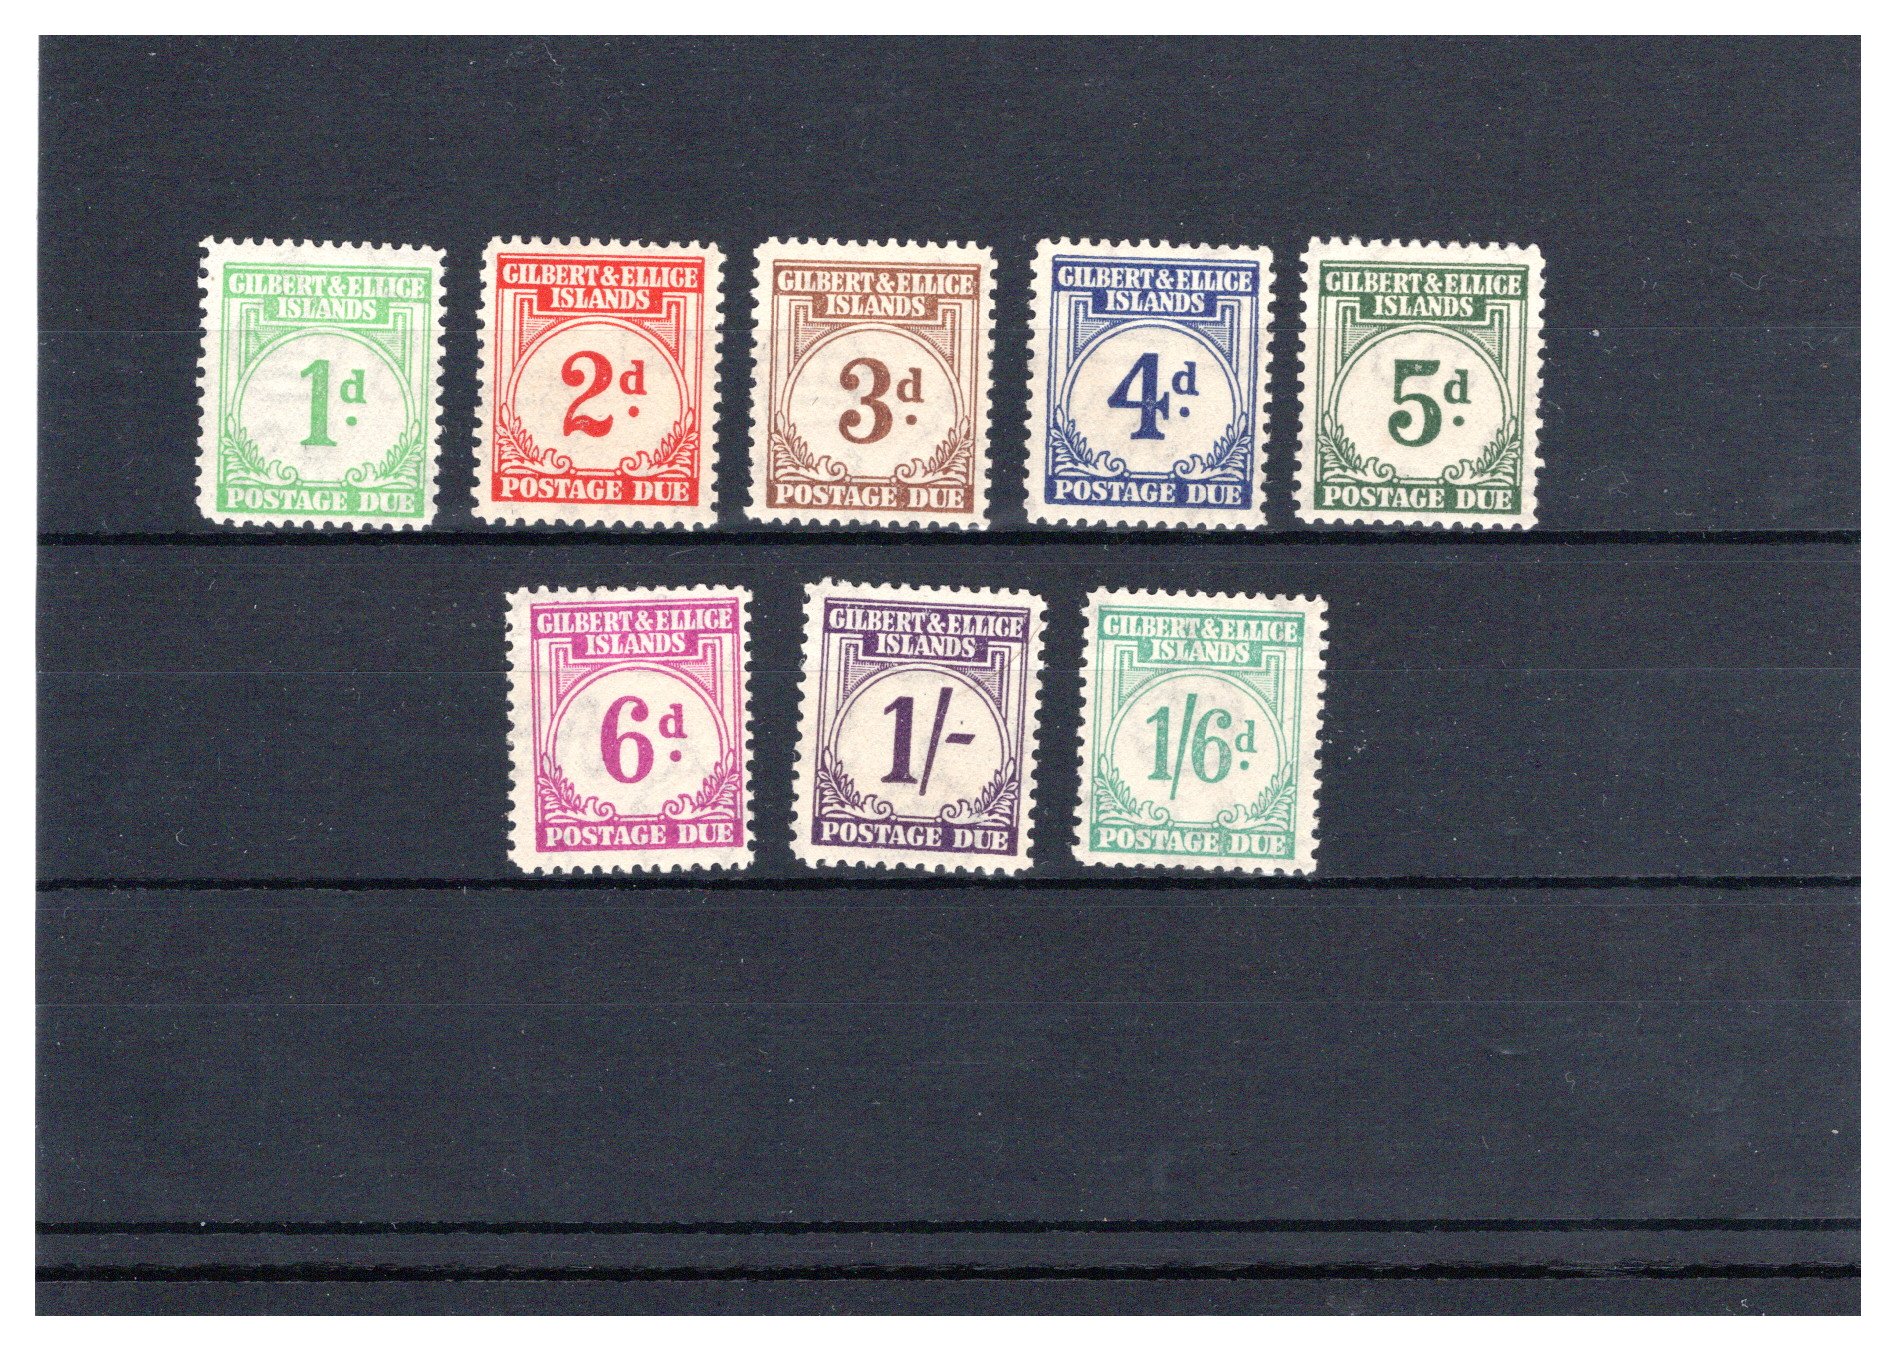 Lot 151 - British Commonwealth Gilbert & Ellice Islands postage stamps -  Georg Bühler Briefmarken Auktionen GmbH 28th mail bid auction